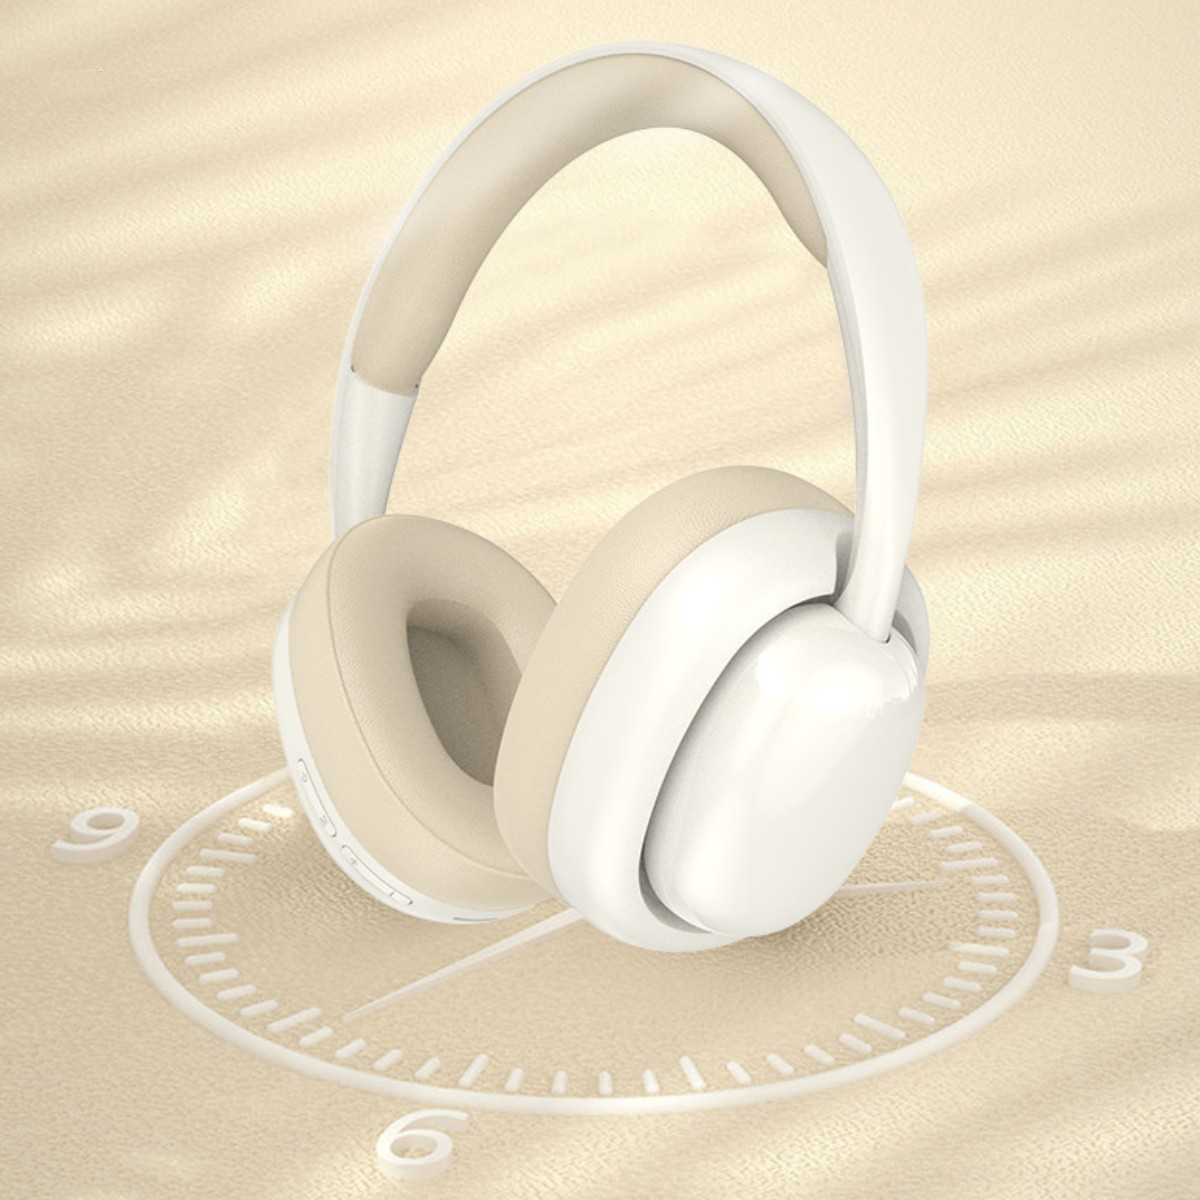 SYNTEK Bluetooth Kopfhörer, weiße Kopfhörern, Kopfhörer Weiß mit Bluetooth Over-ear Bluetooth-Kopfhörer